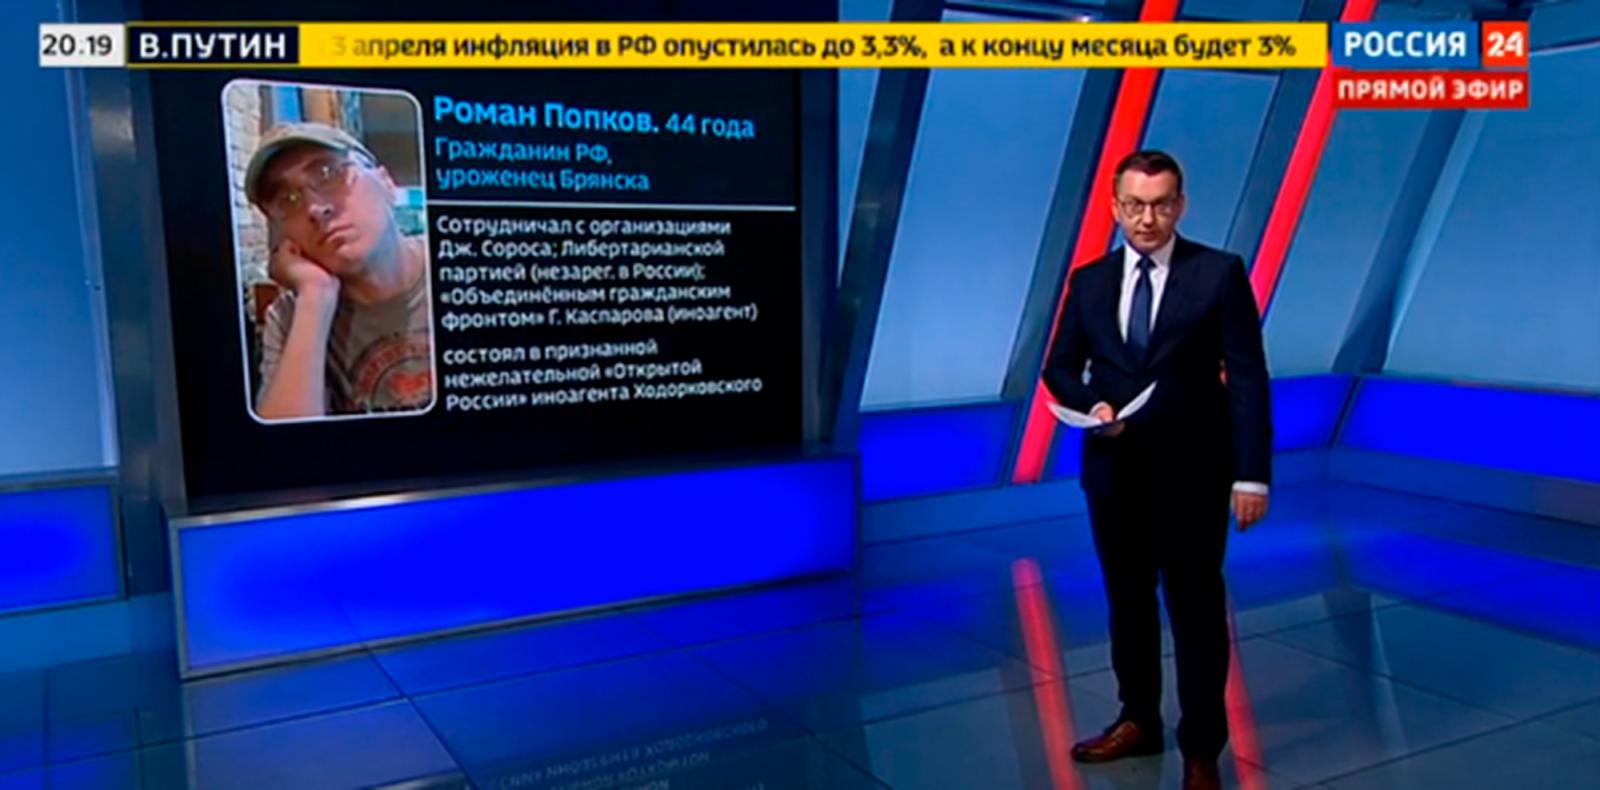 Эксперт канала «Россия 24», заявил, что брянца Попкова могут пустить в расход западные кураторы